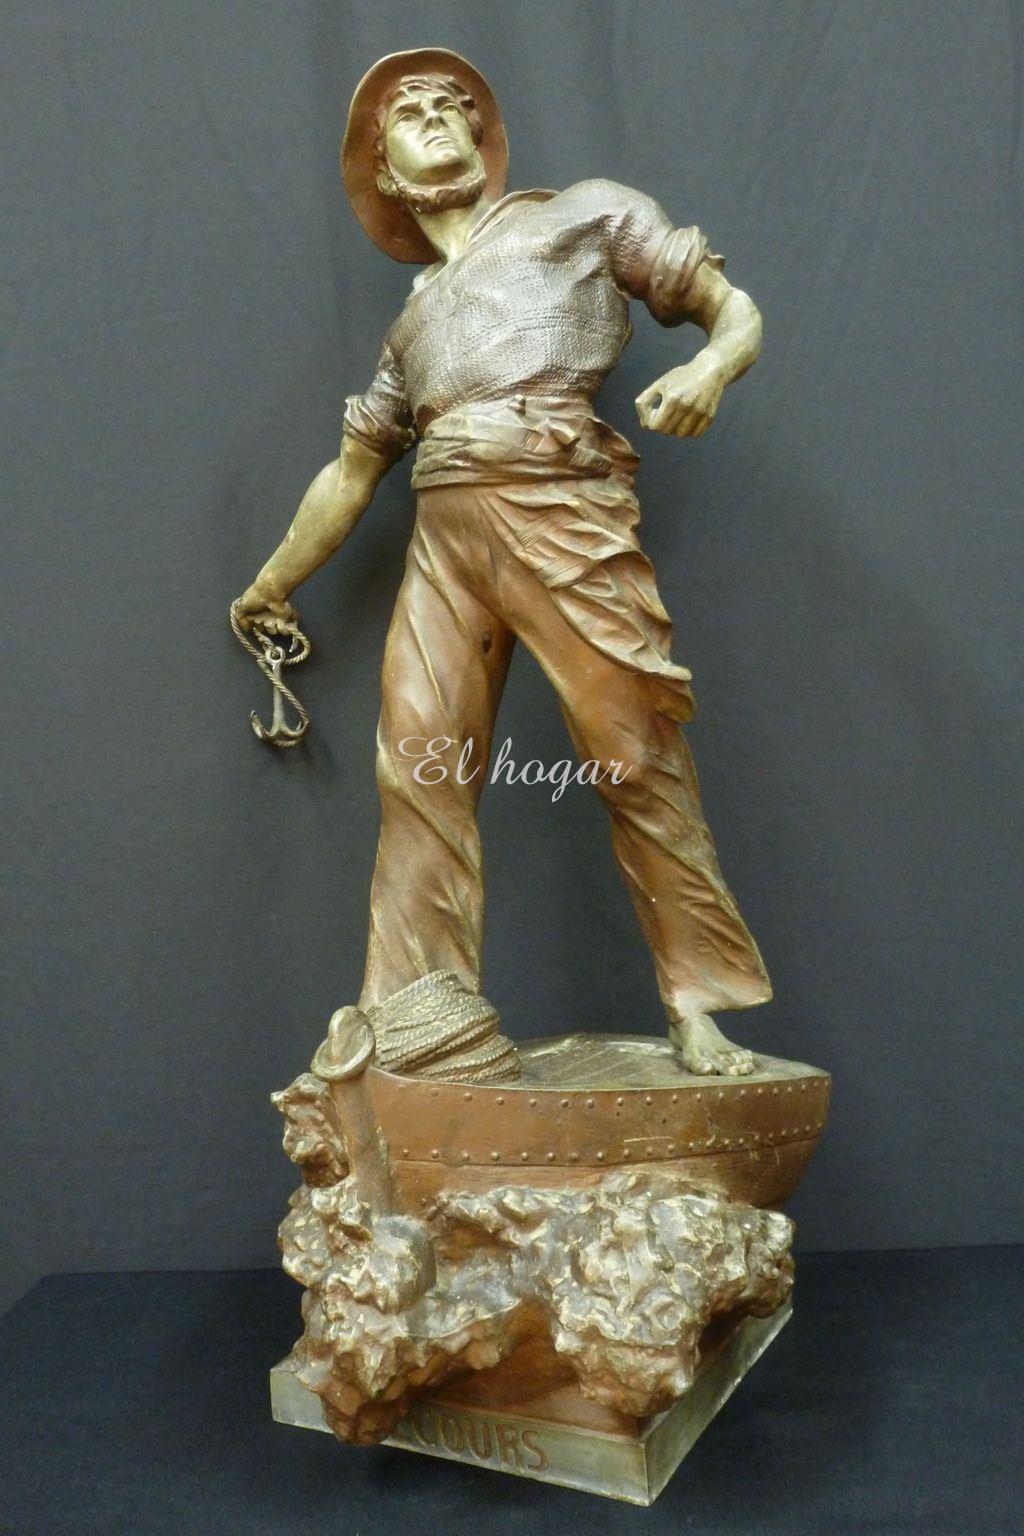 Escultura de calamina titulada " SECOURS " del escultor alemán ARTHUR WAAGEN ( 1833-1898) - Imagen 6